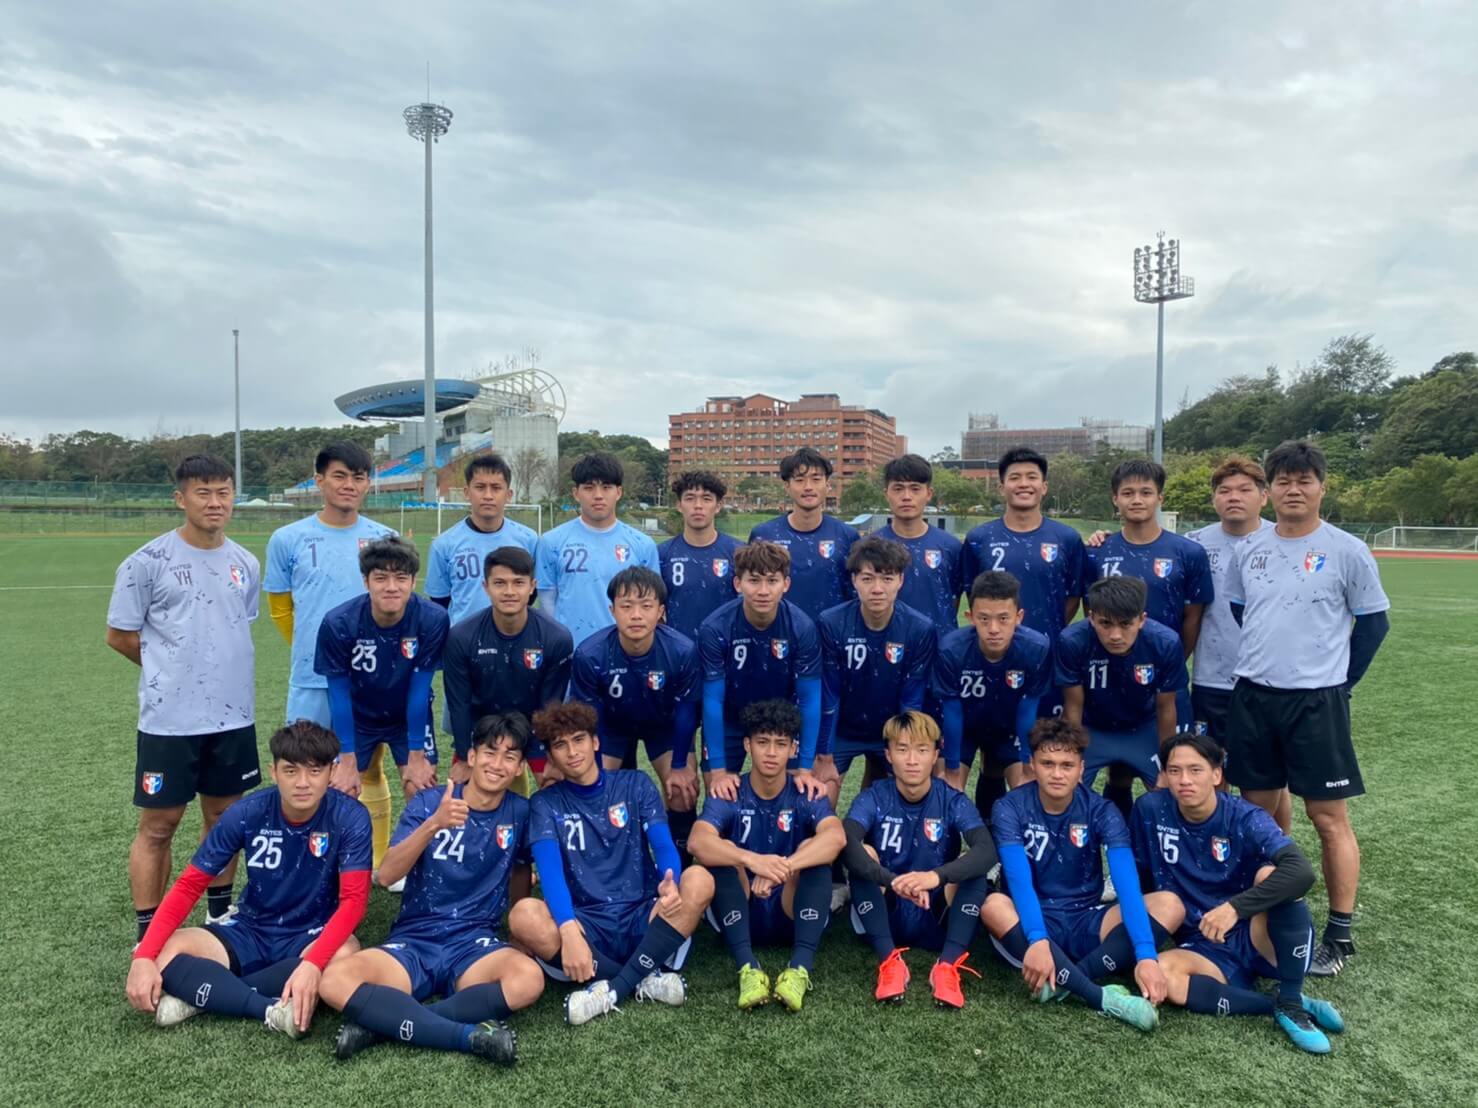 傳蒙古邀請中華U23男足進行友誼賽